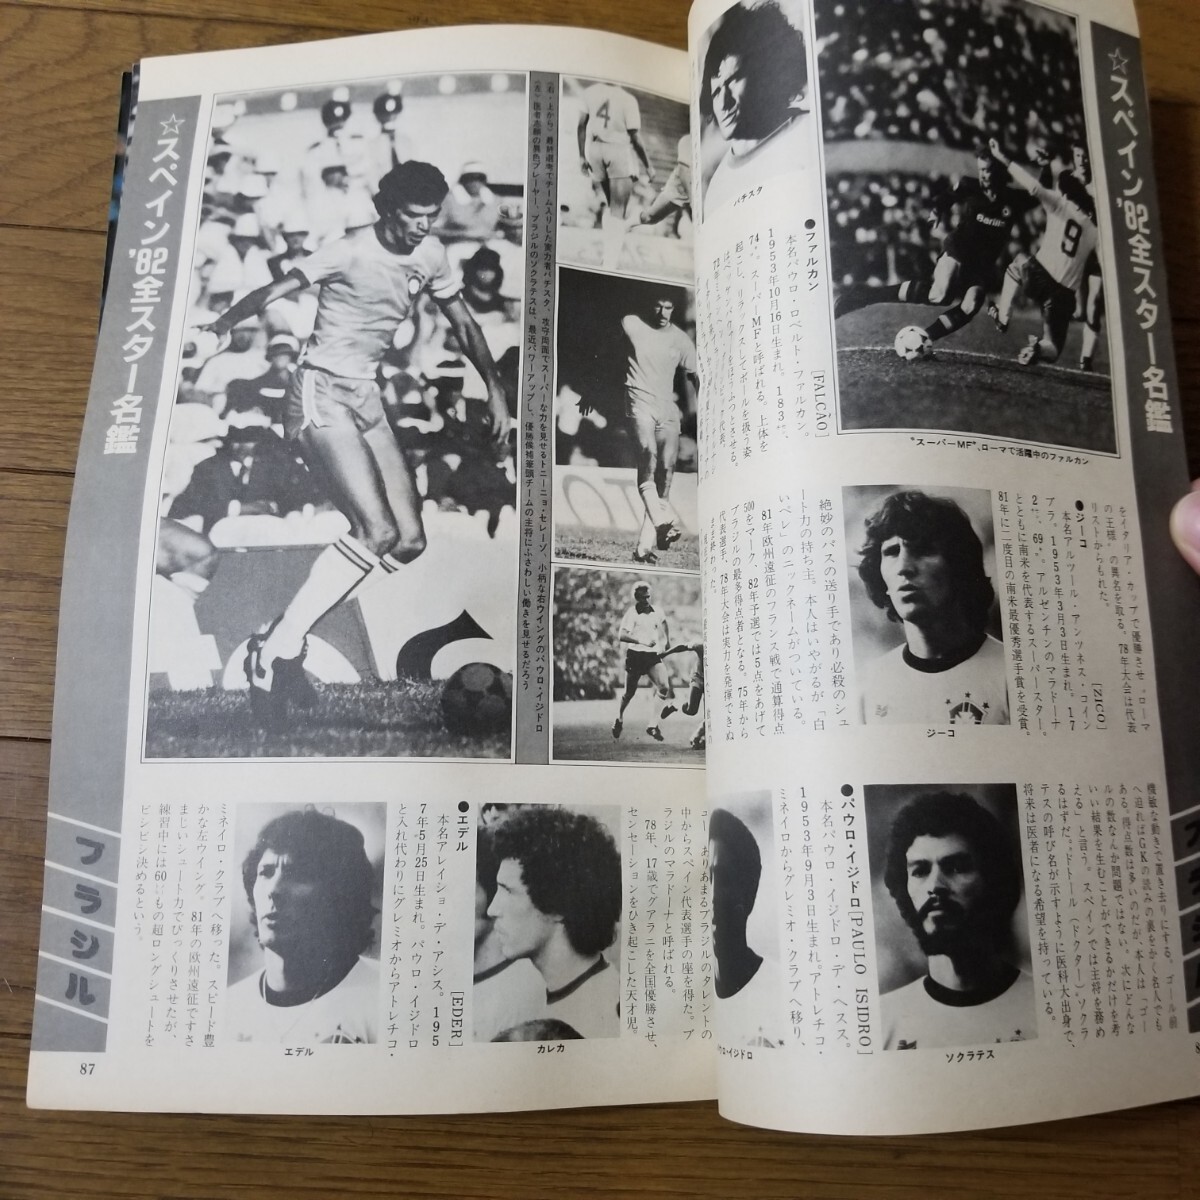 1982 SPAIN WORLD CUP SERIES-1 スペイン82総合ガイド 別冊サッカーマガジン マラドーナ ジーコ カレカなど 82全スター名鑑掲載の画像5